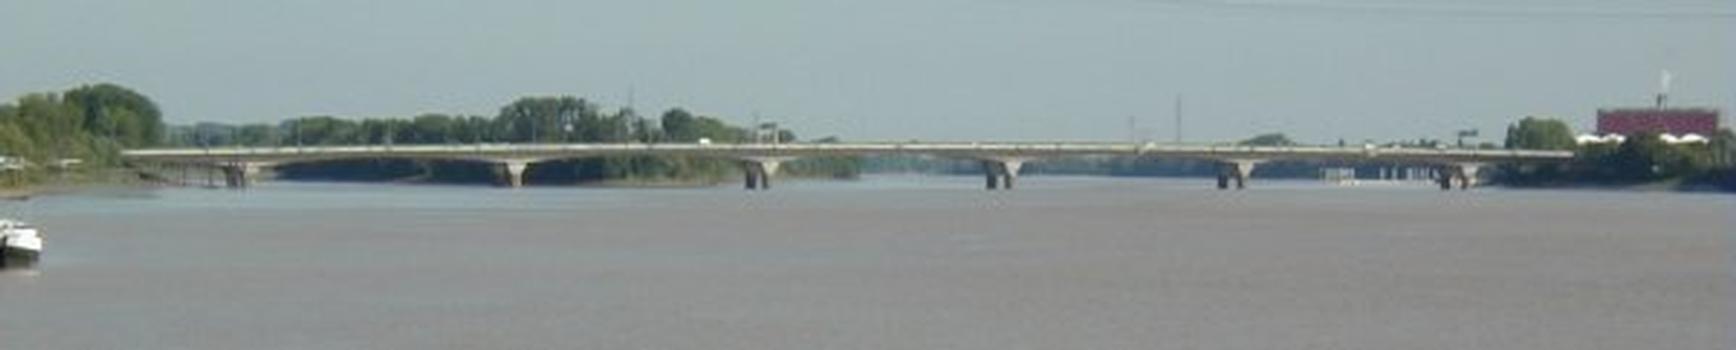 François Mitterand Bridge, Bordeaux